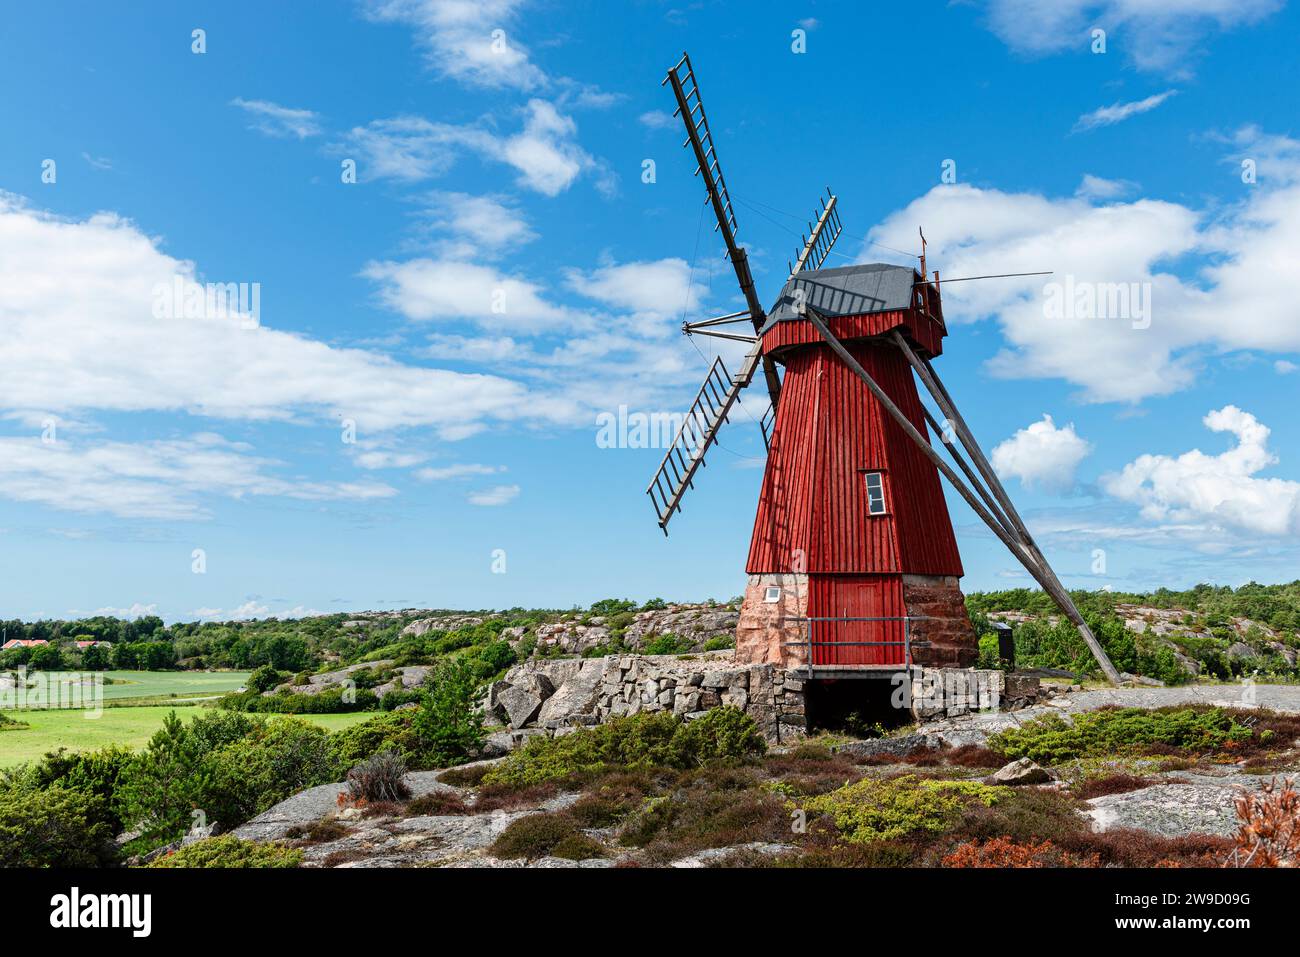 Moulin à vent de Ulseröd avec façade en bois de couleur rouge sur une colline près de Saltvik dans l'archipel de la côte ouest de la Suède, Bohuslän, Tanumshede Banque D'Images